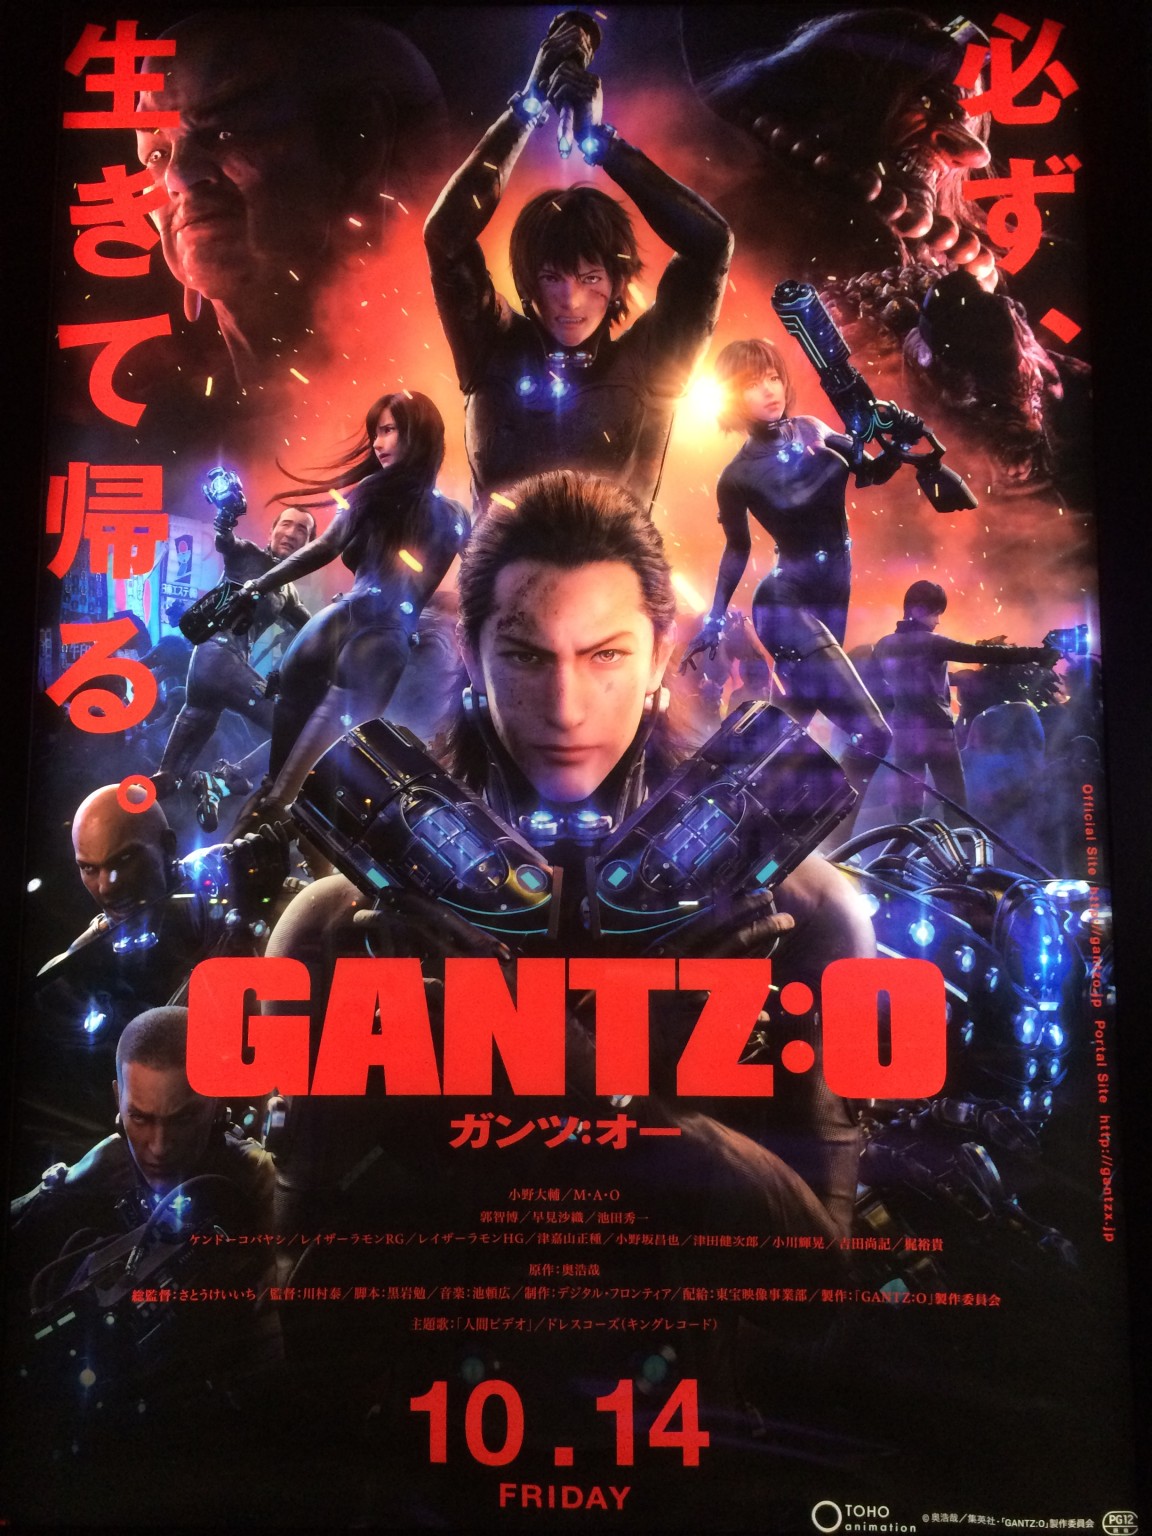 映画 Gantz O ガンツ オー 感想 ネタバレ 3dcgで実写並の映像と世界観を再現 ハルログ